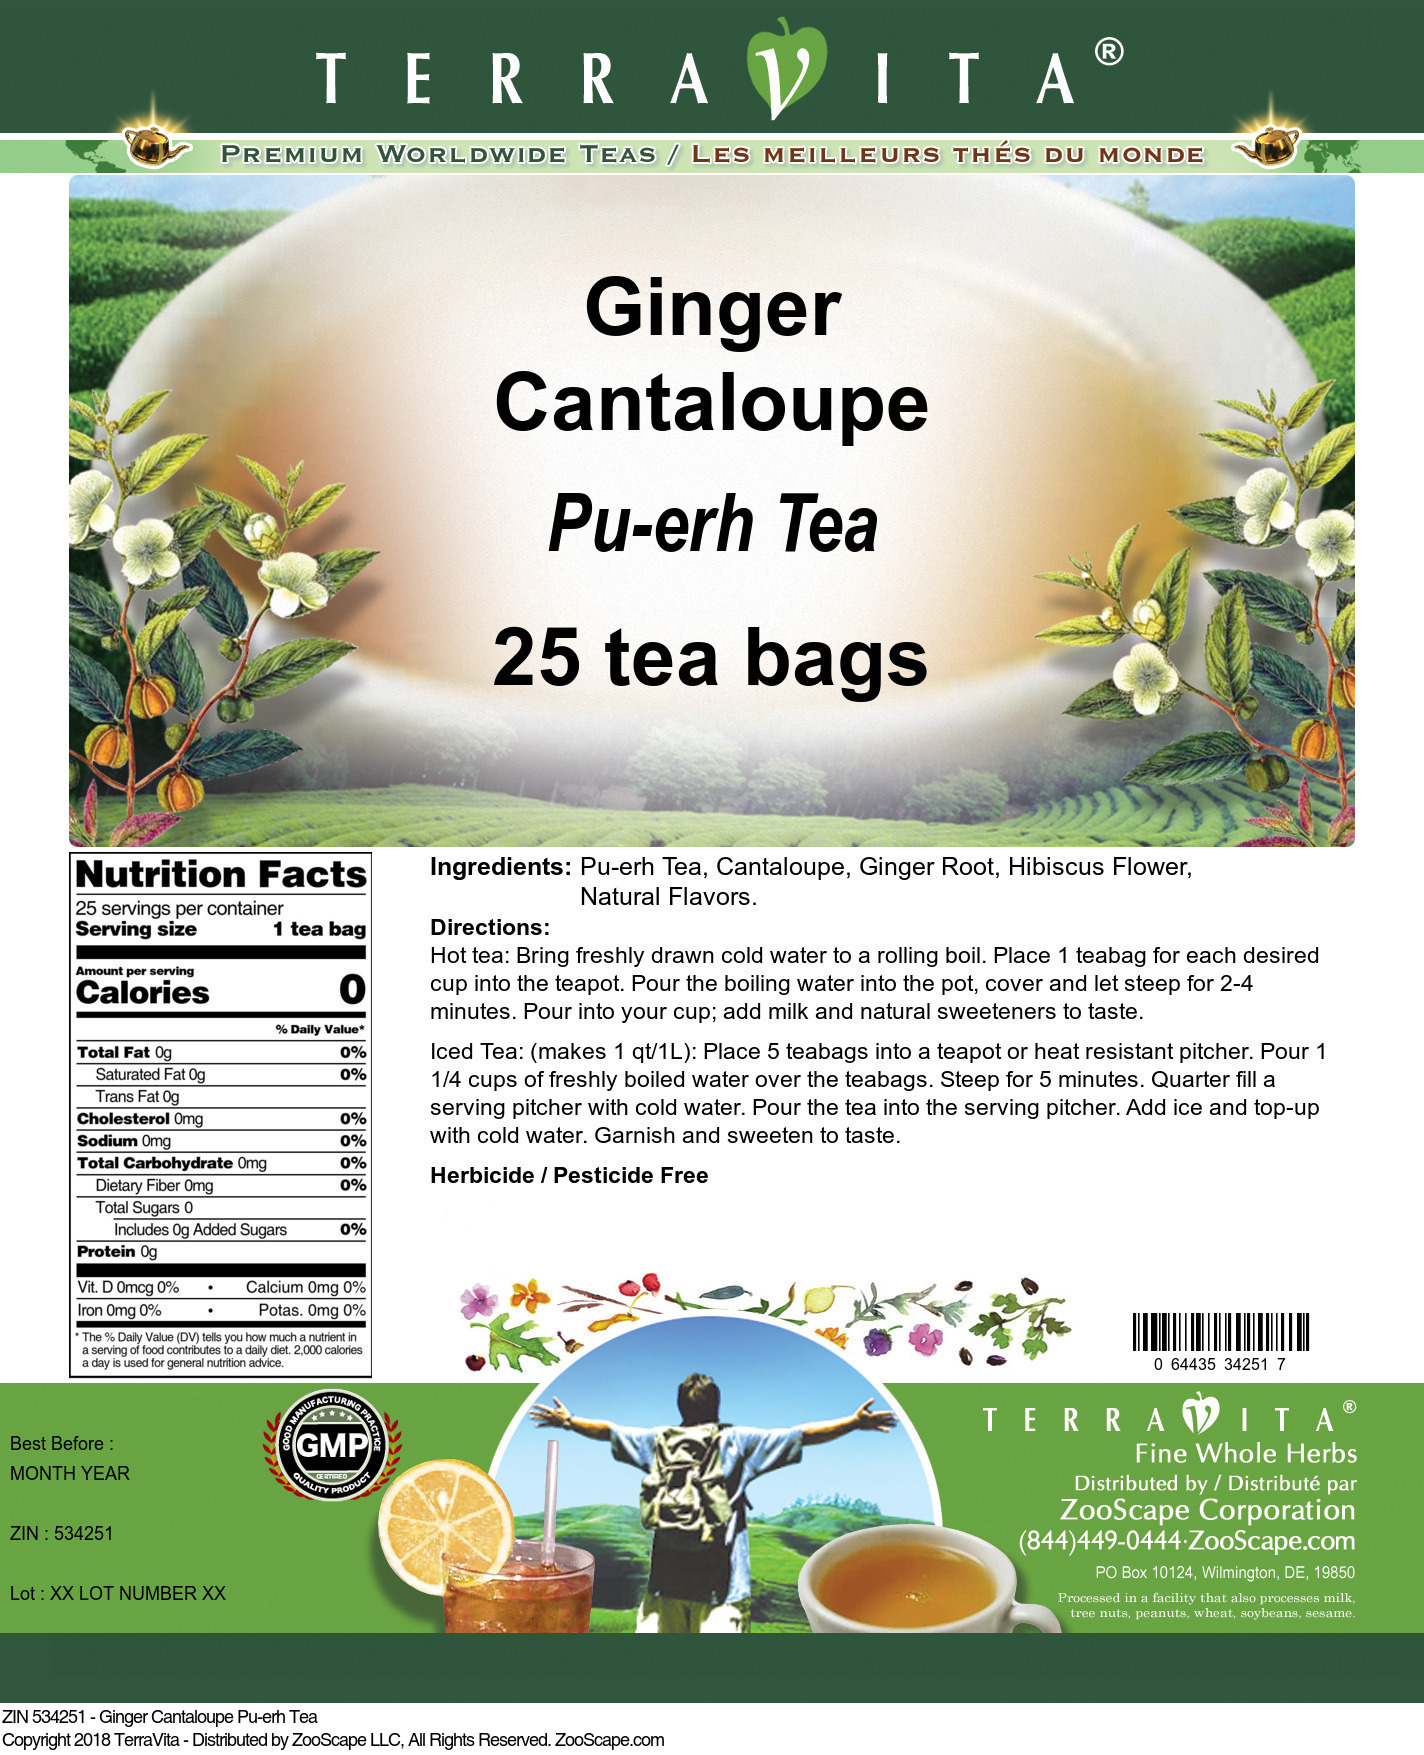 Ginger Cantaloupe Pu-erh Tea - Label